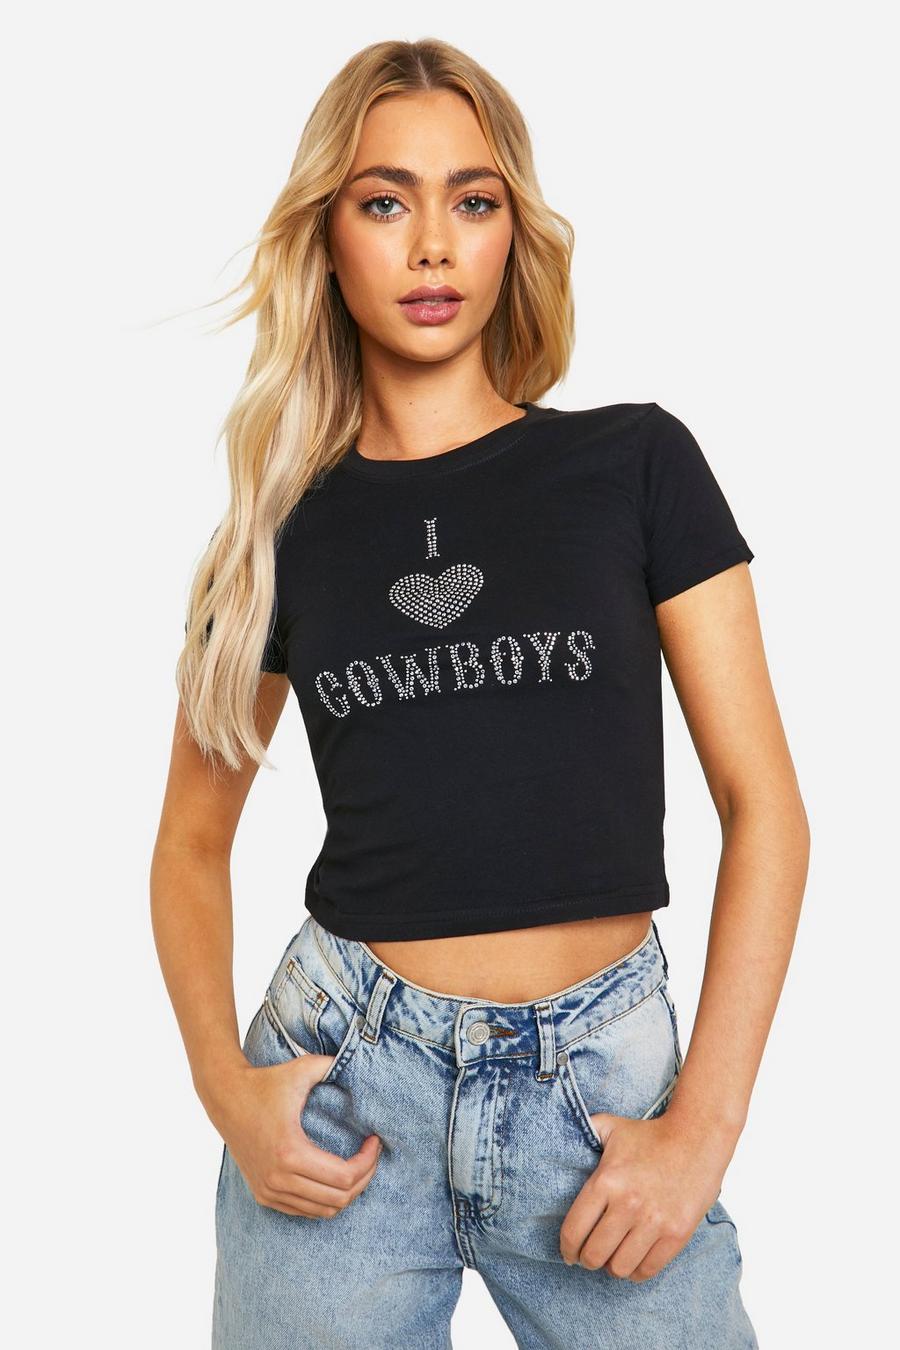 Hotfix I Heart Cowboys Baby T-Shirt, Black